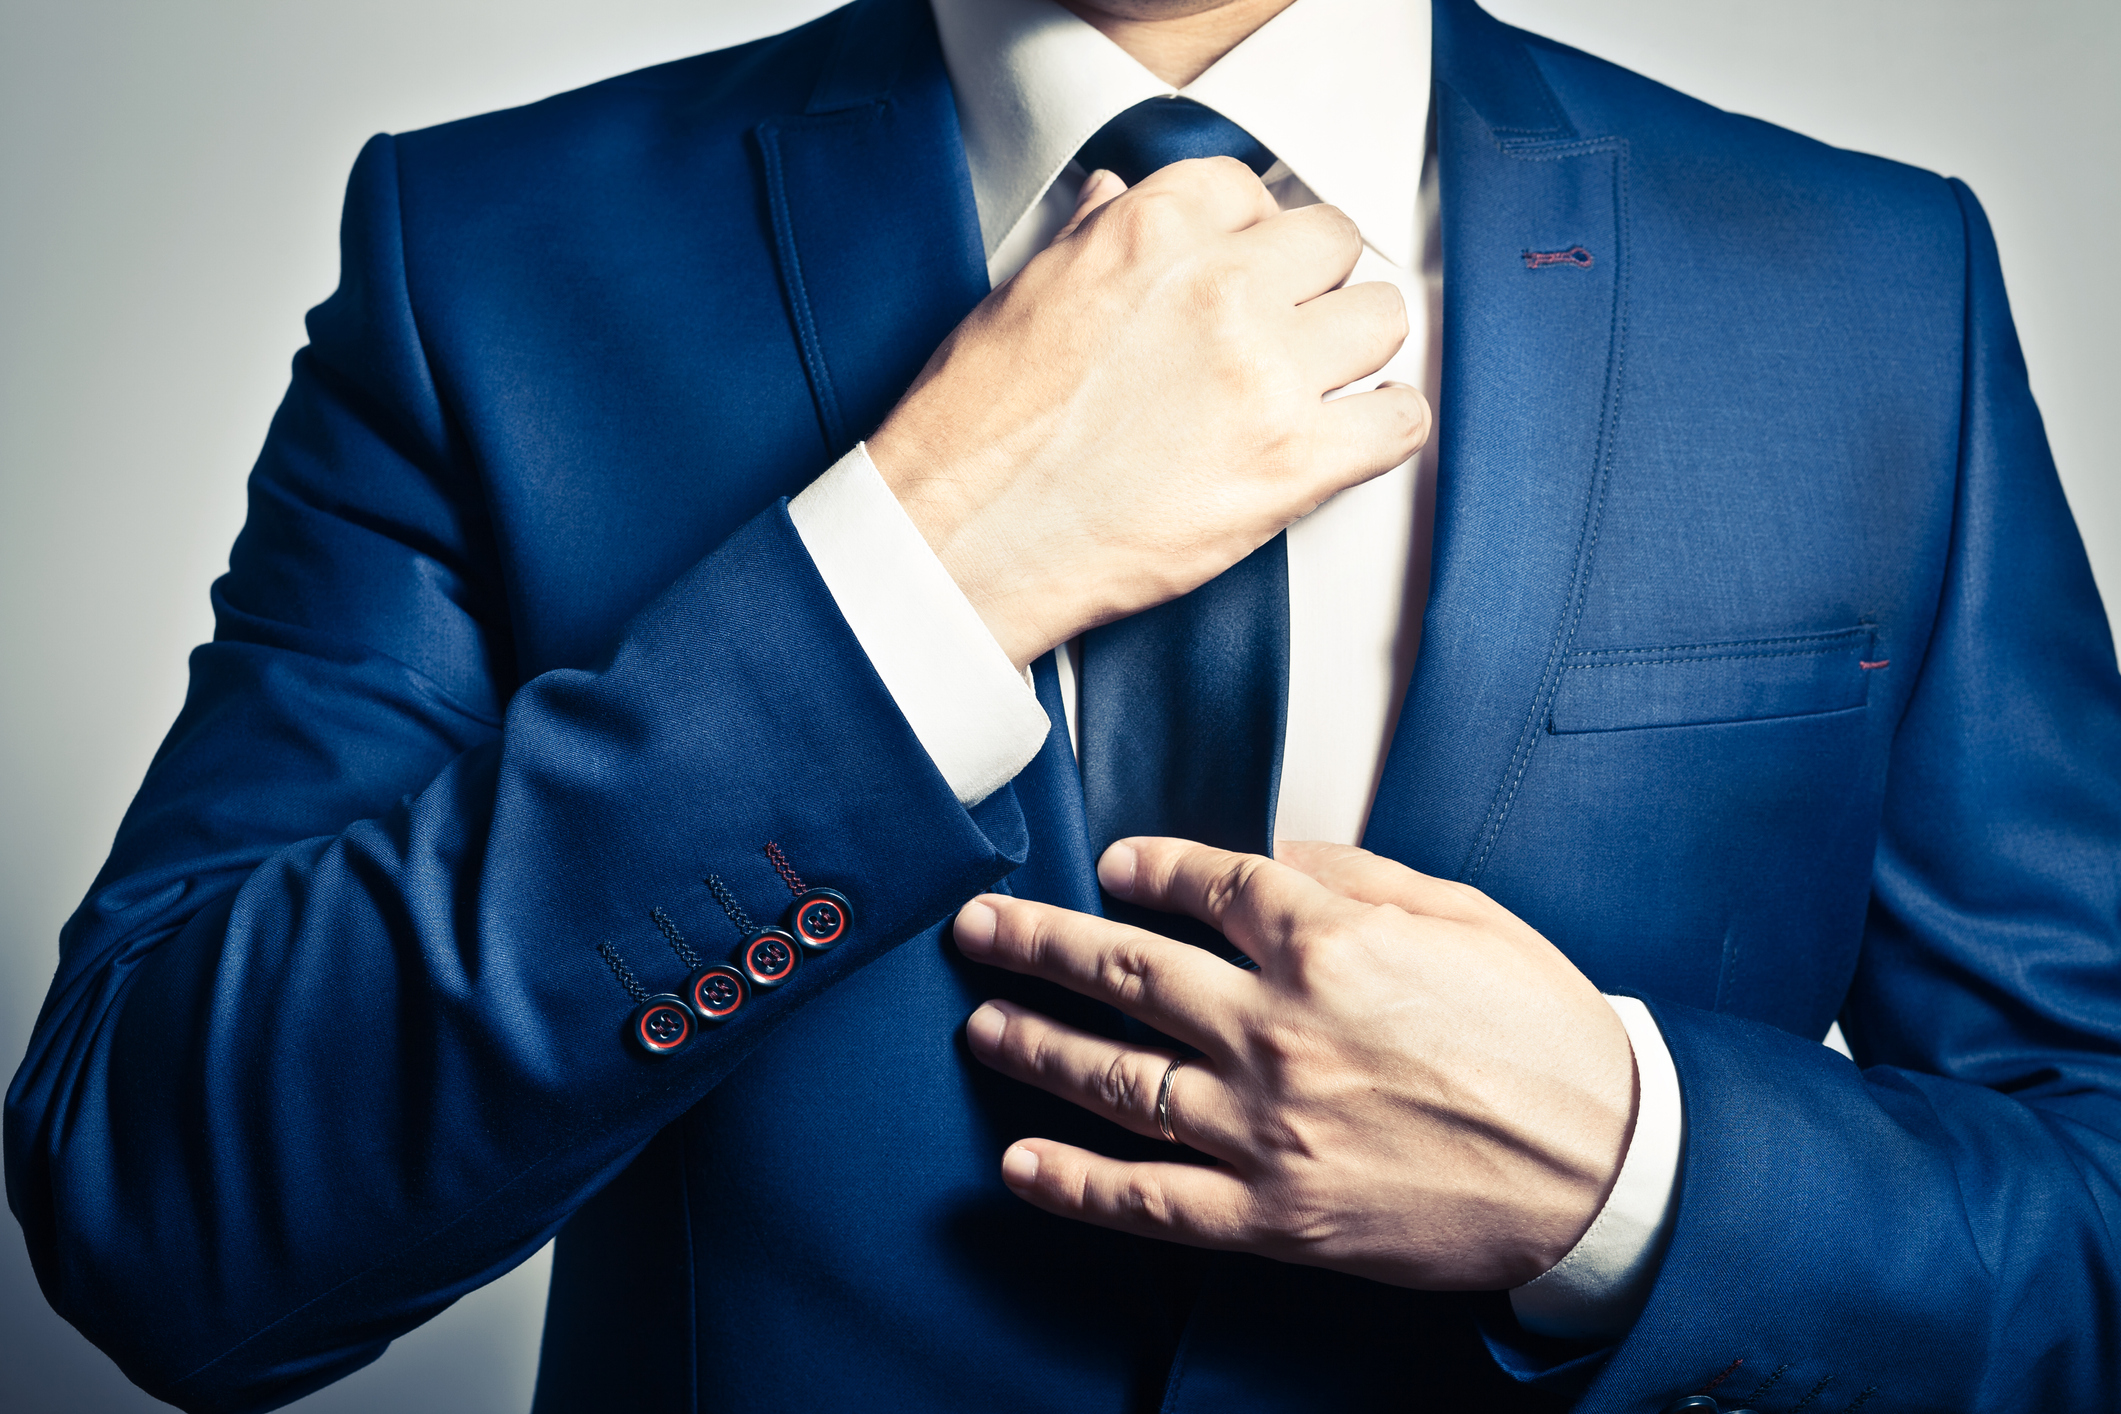 headless businessman in blue suit adjusting tie